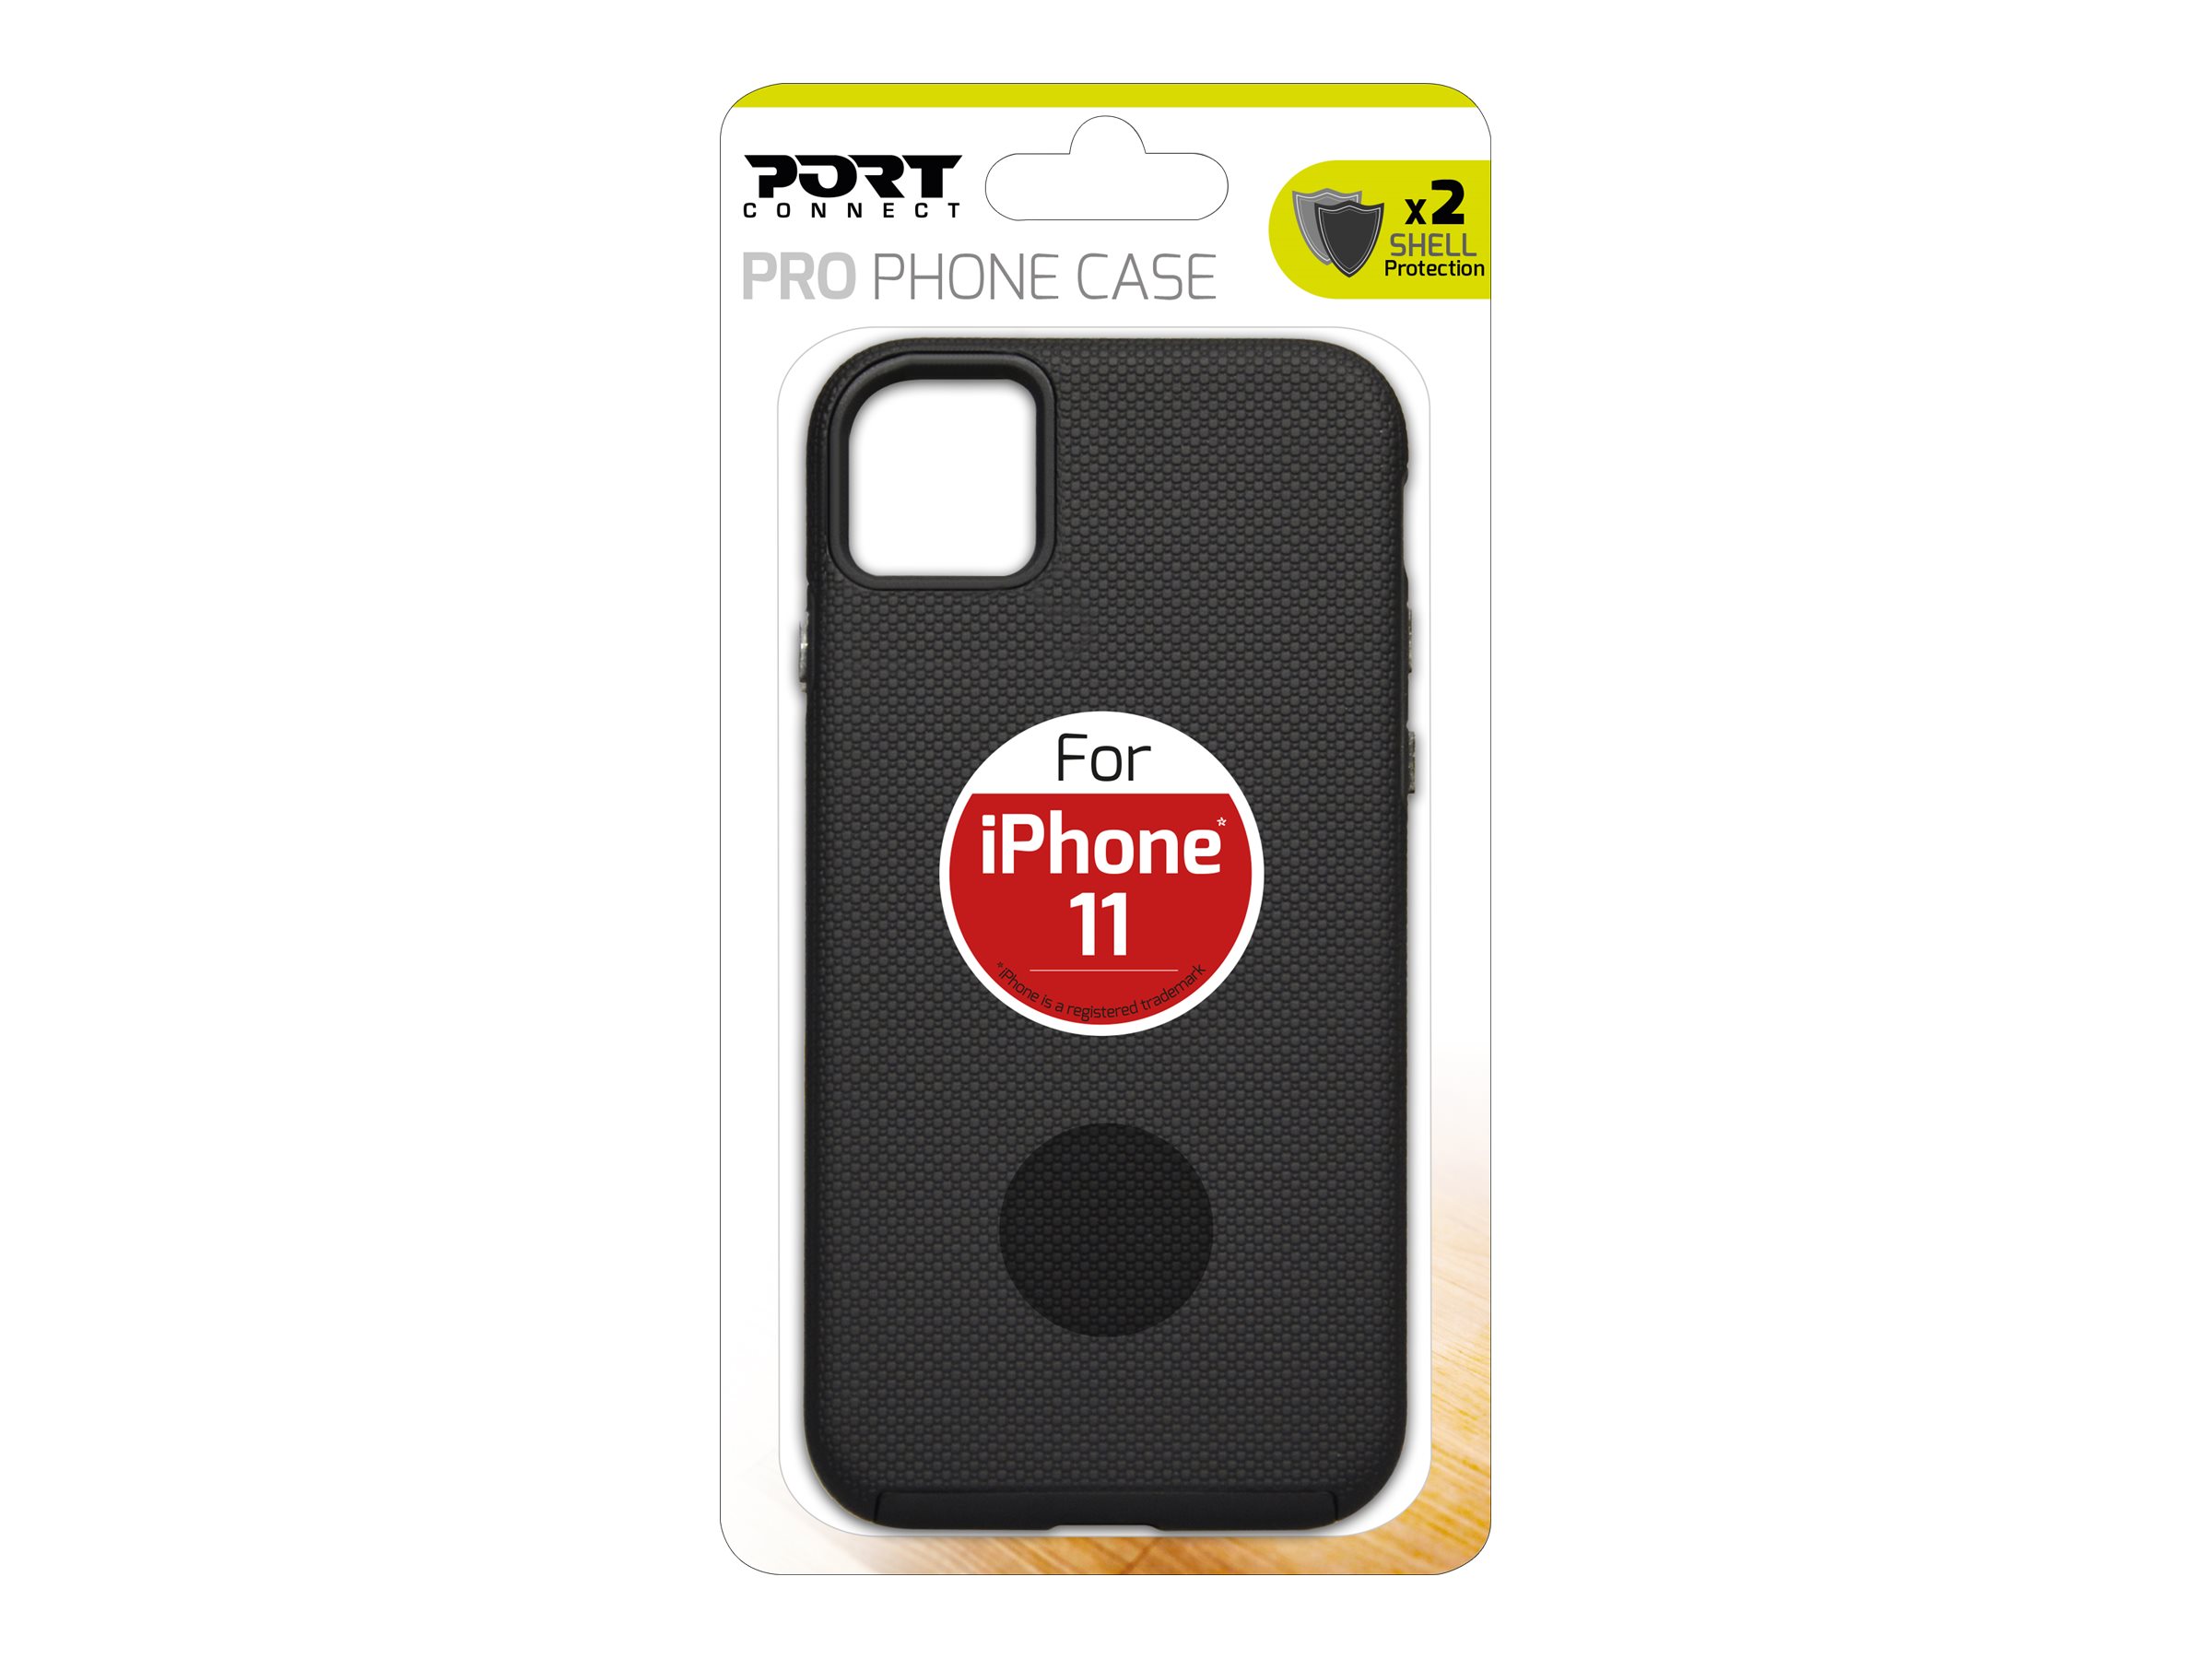 PORT Connect PRO phone case - Coque de protection pour téléphone portable - polycarbonate, polyuréthanne thermoplastique (TPU) - pour Apple iPhone 11 - 901860 - Coques et étuis pour téléphone portable